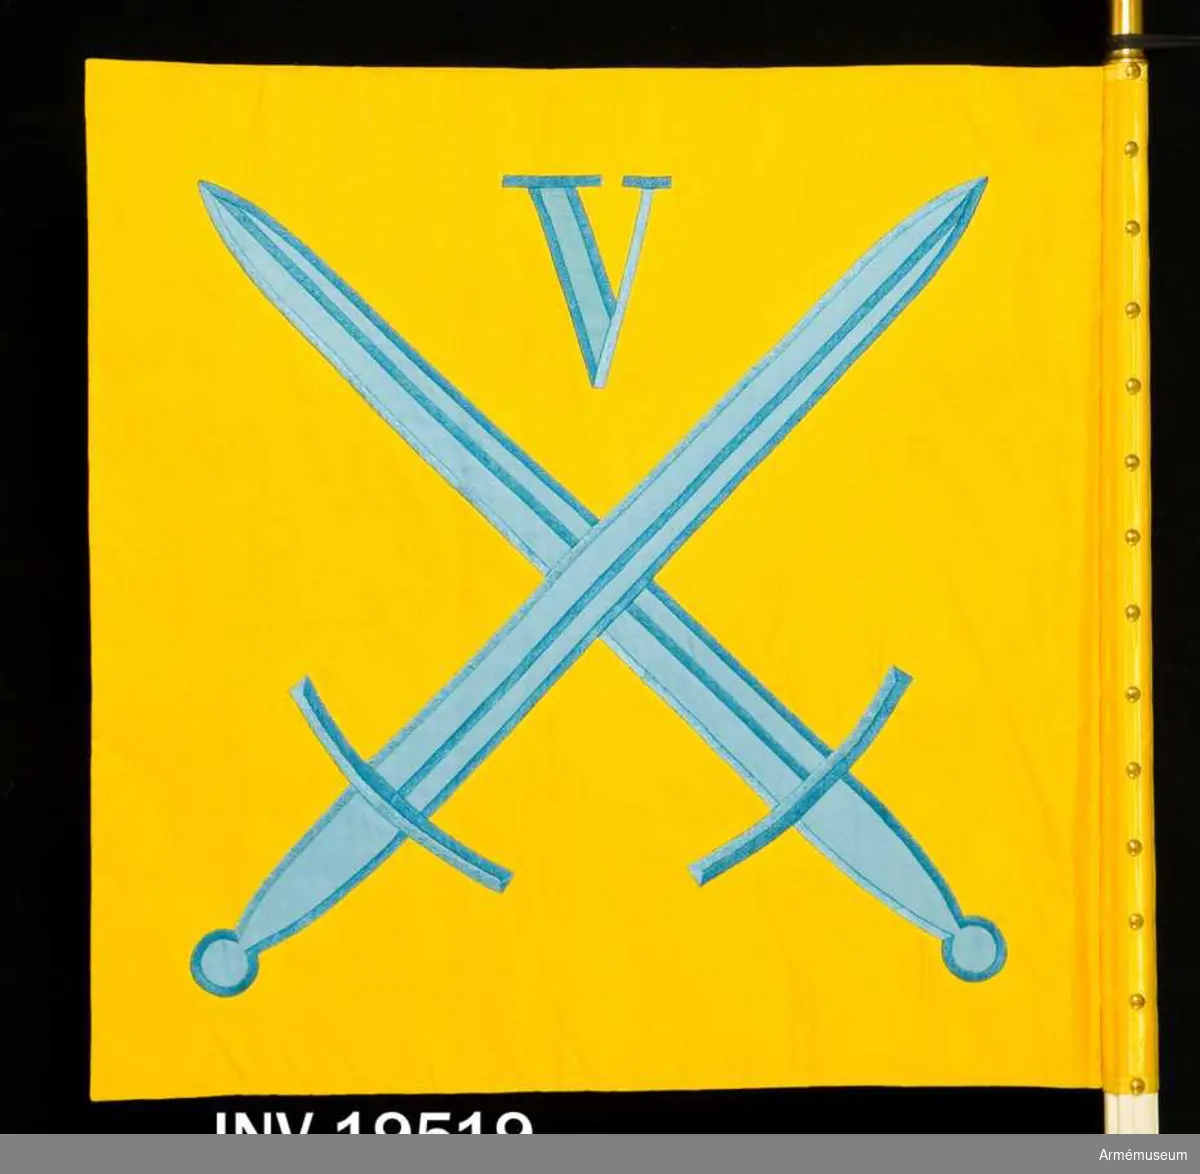 Kommandotecknet består av två tygsidor i gult siden. På sidenet finns i intarsia i blått siden två korslagda svärd och ovanför dessa i mitten en romersk siffra V, fem, även den i intarsia. Motivet finns på båda sidor. Kommandotecknet är spikat med 14 st tennlikor och ett ripsat band.

Samhörande nr AM 19519, 19520, standar, spets. 